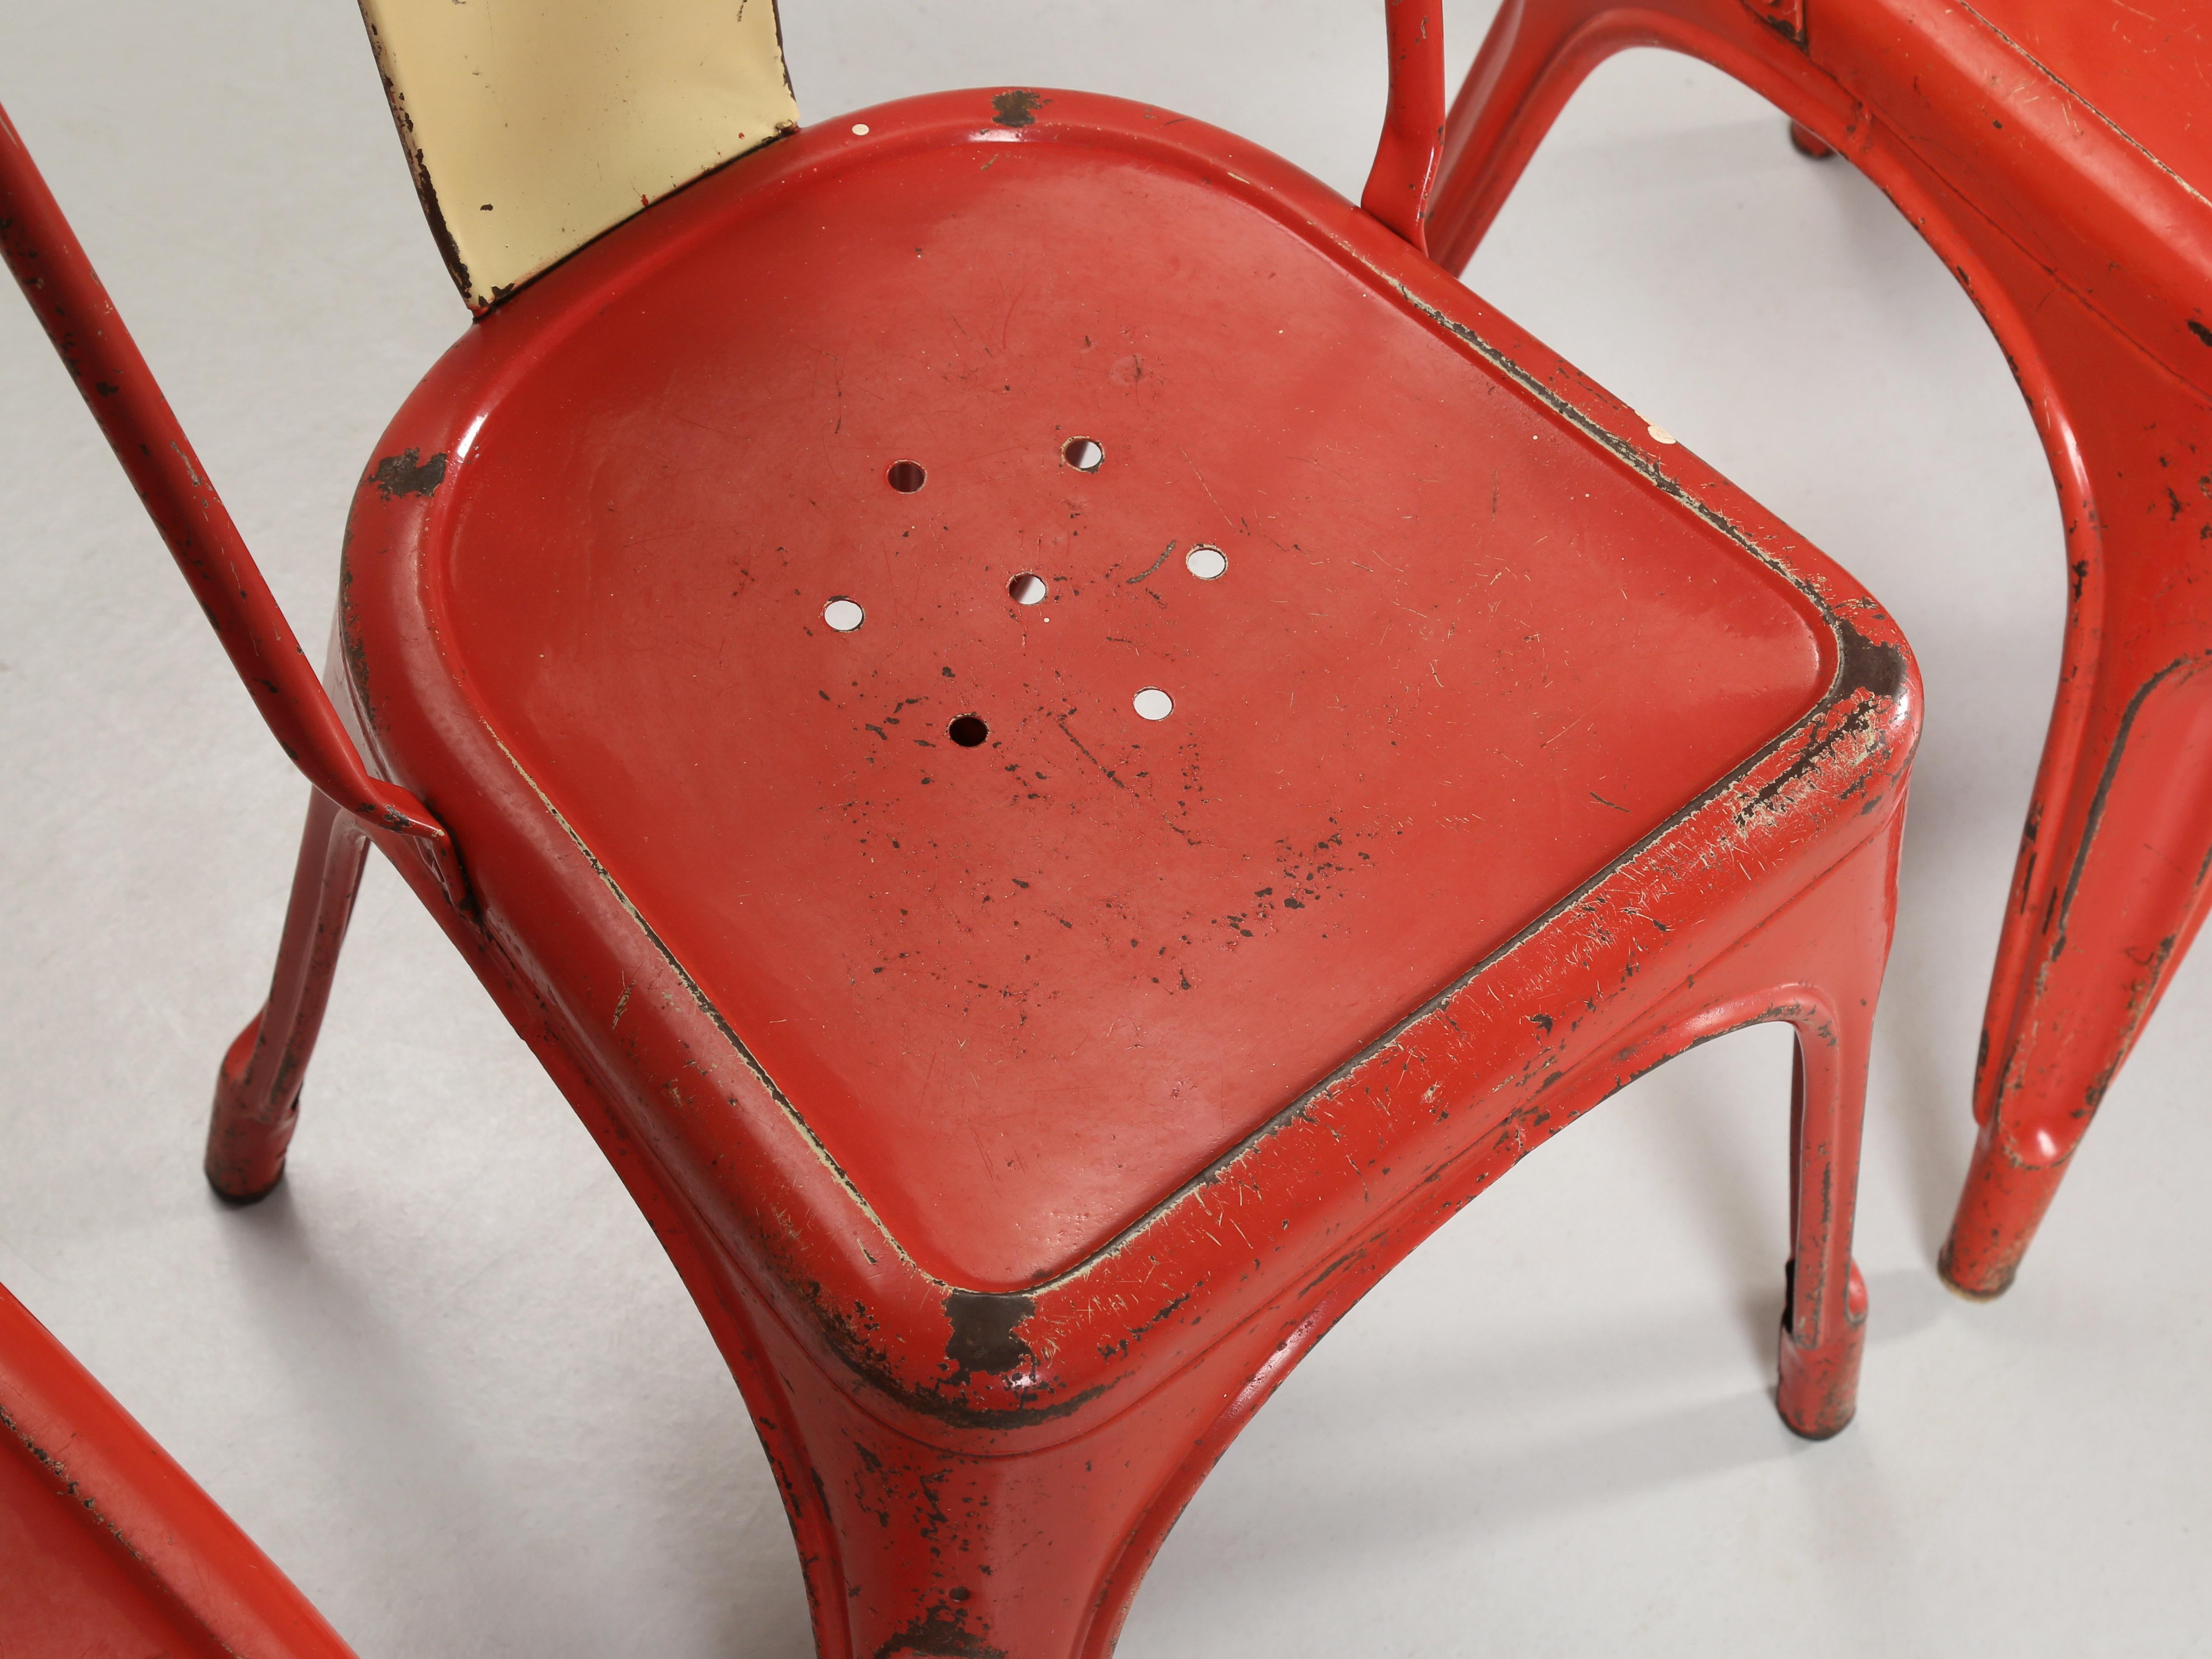 Steel Vintage Authentic Original Paint Tolix Chairs c1950's Large Quantity Available For Sale